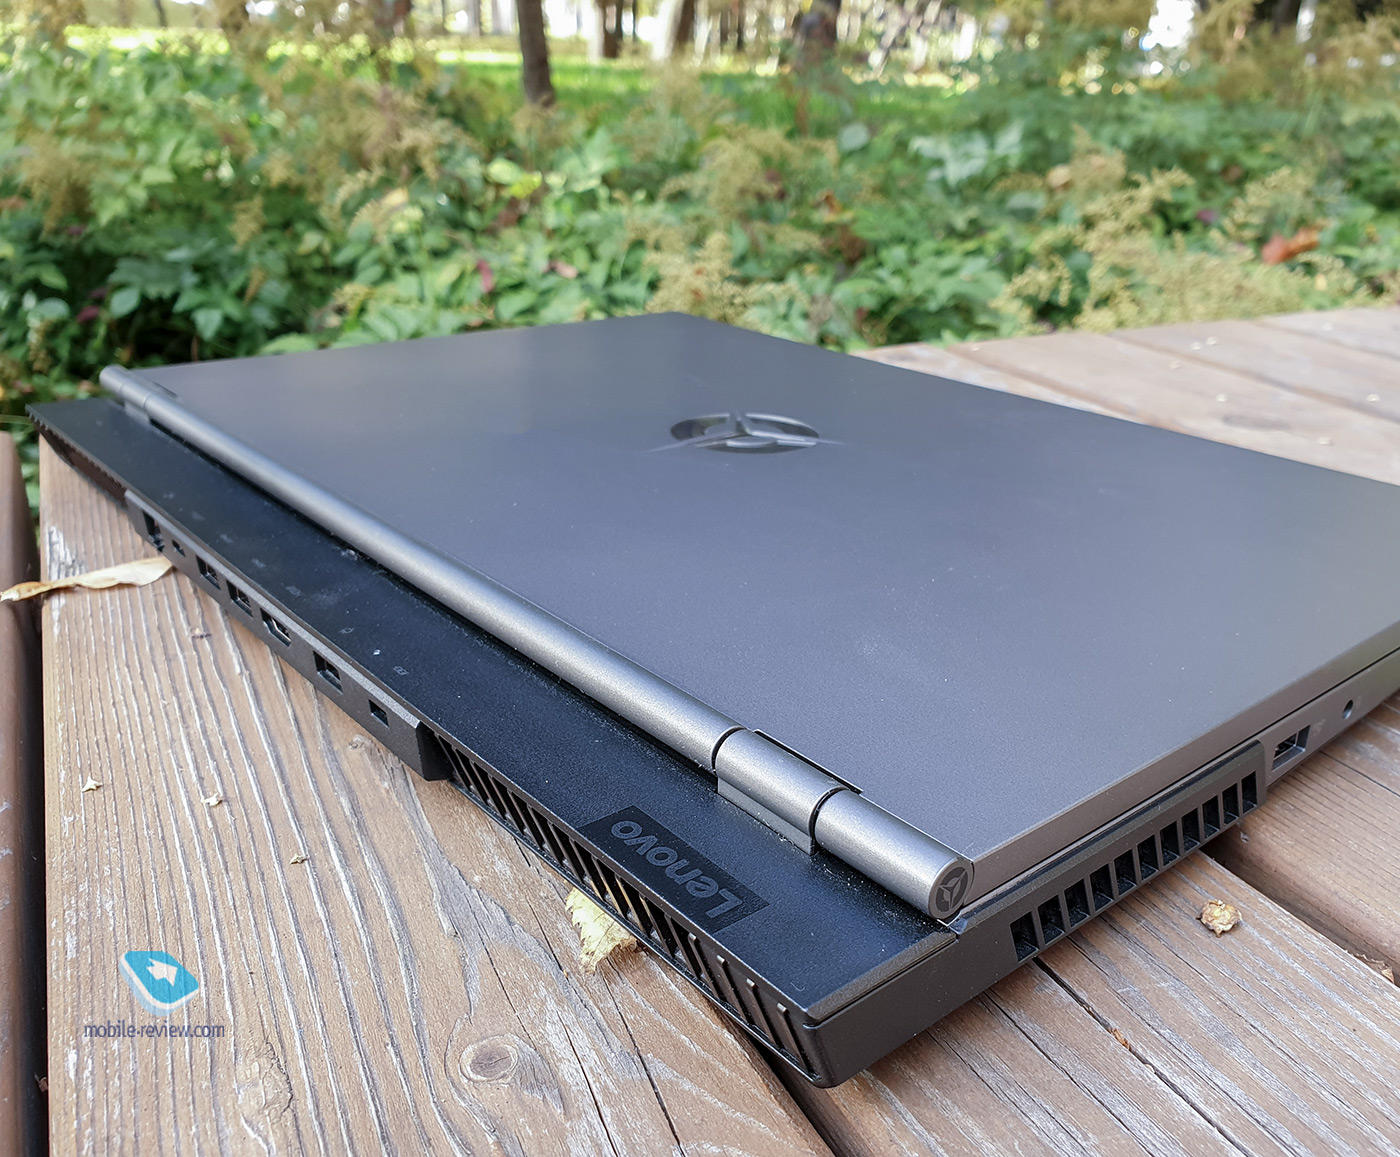 Lenovo Legion 5P: доступный игровой ноутбук для работы